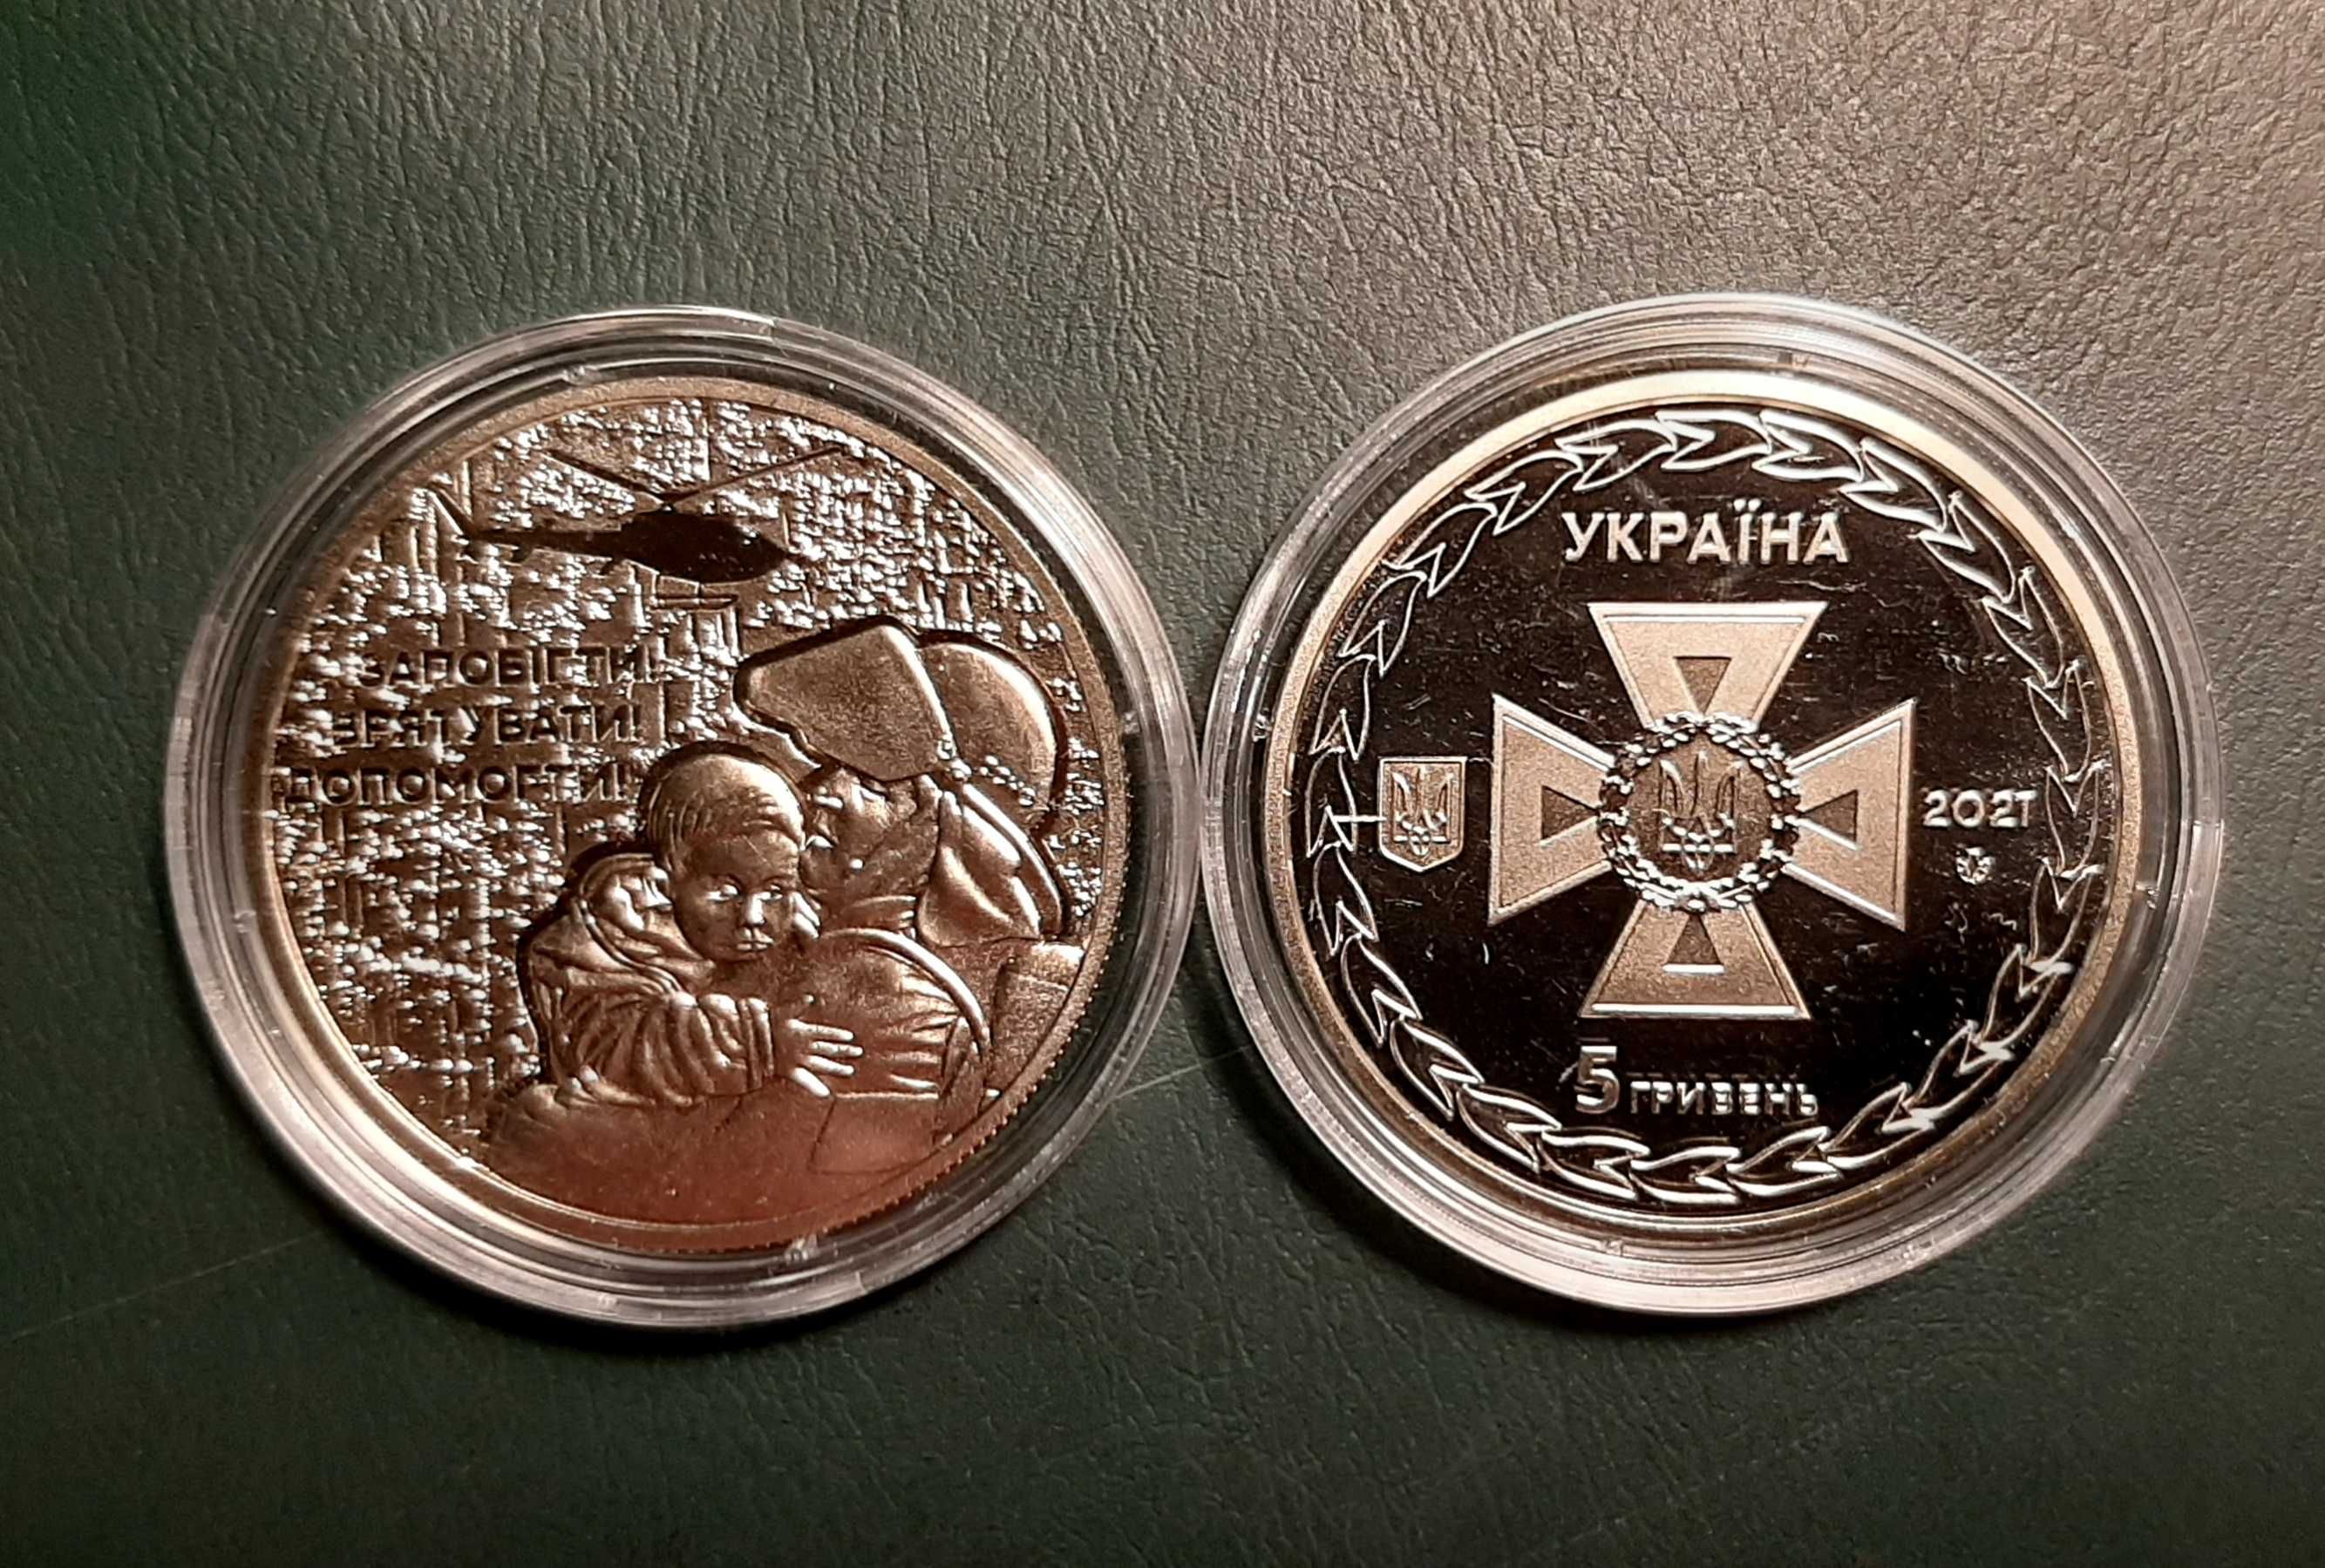 Монеты Украины 2021 Рік Тигра, Храм Петра і Павла и другие монеты.